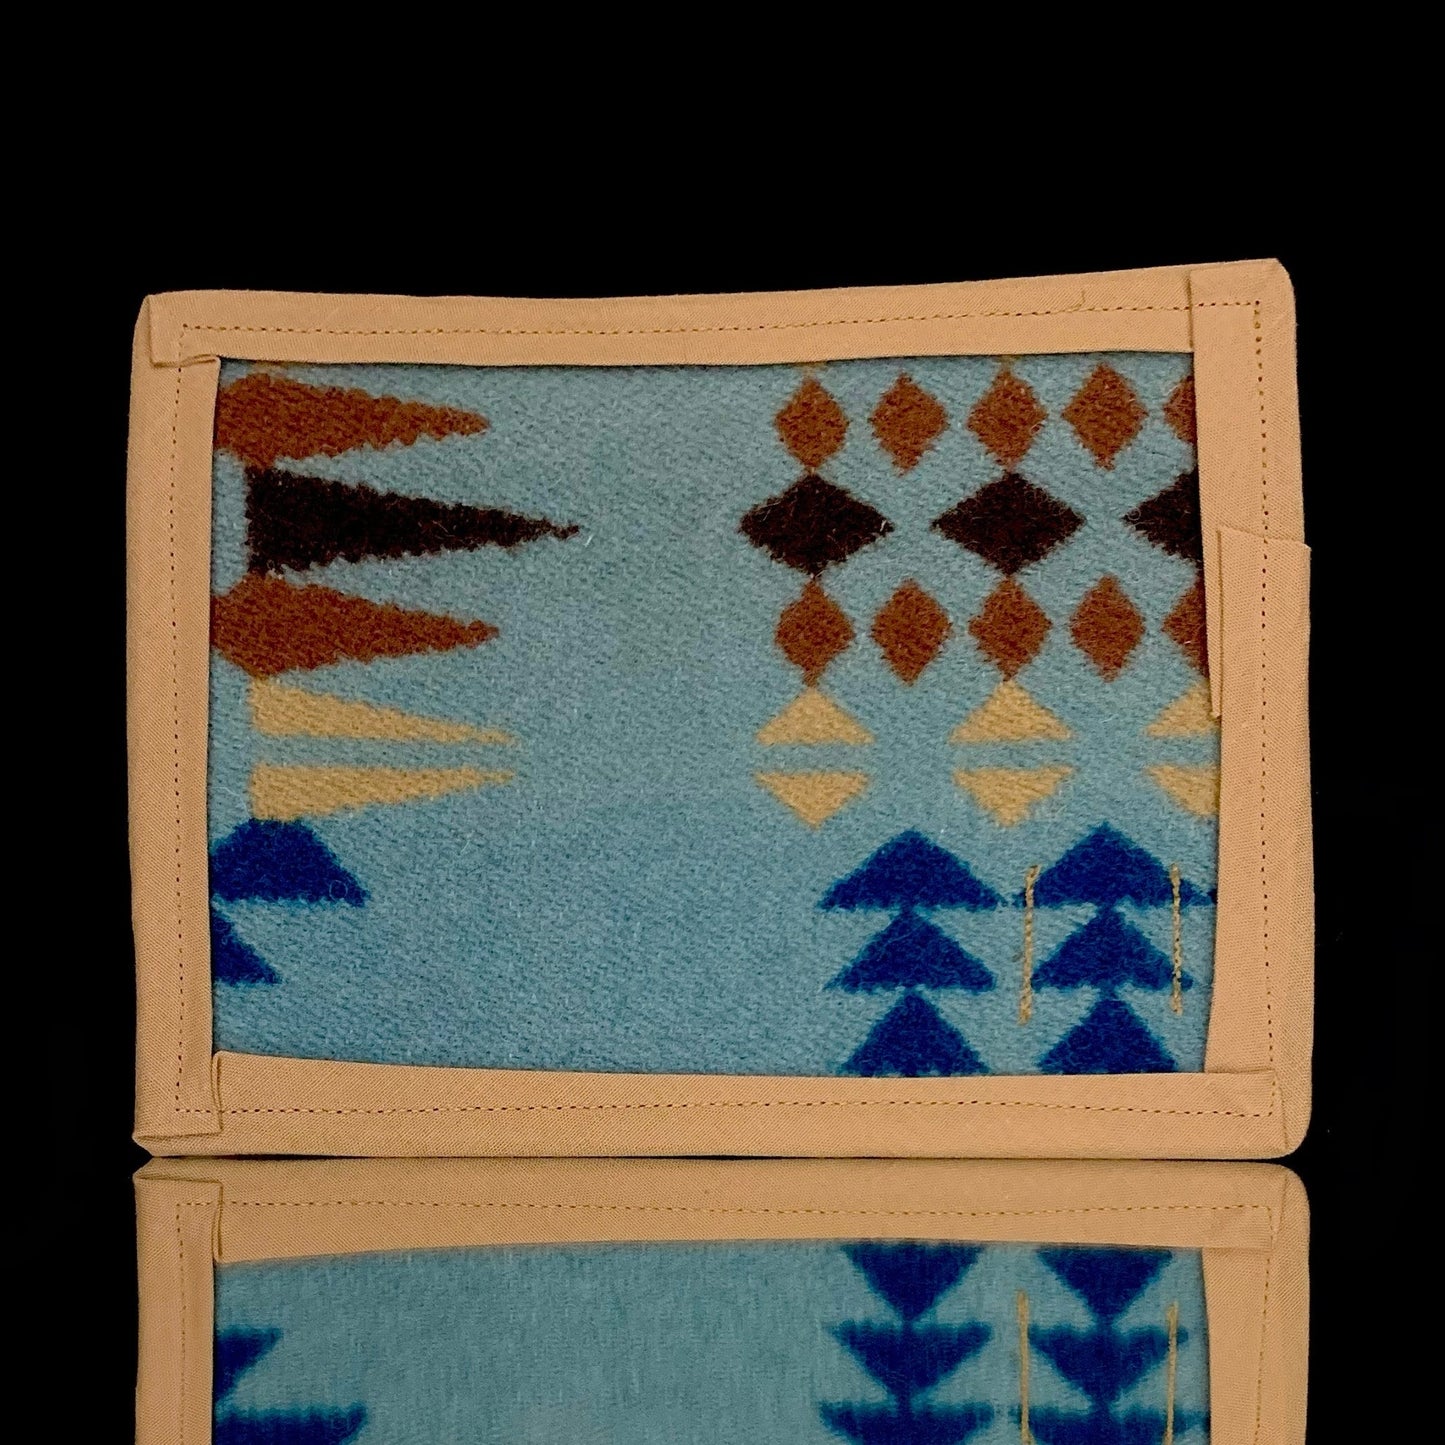 6.5” x 4.5” Pendleton mat by Wook Wear